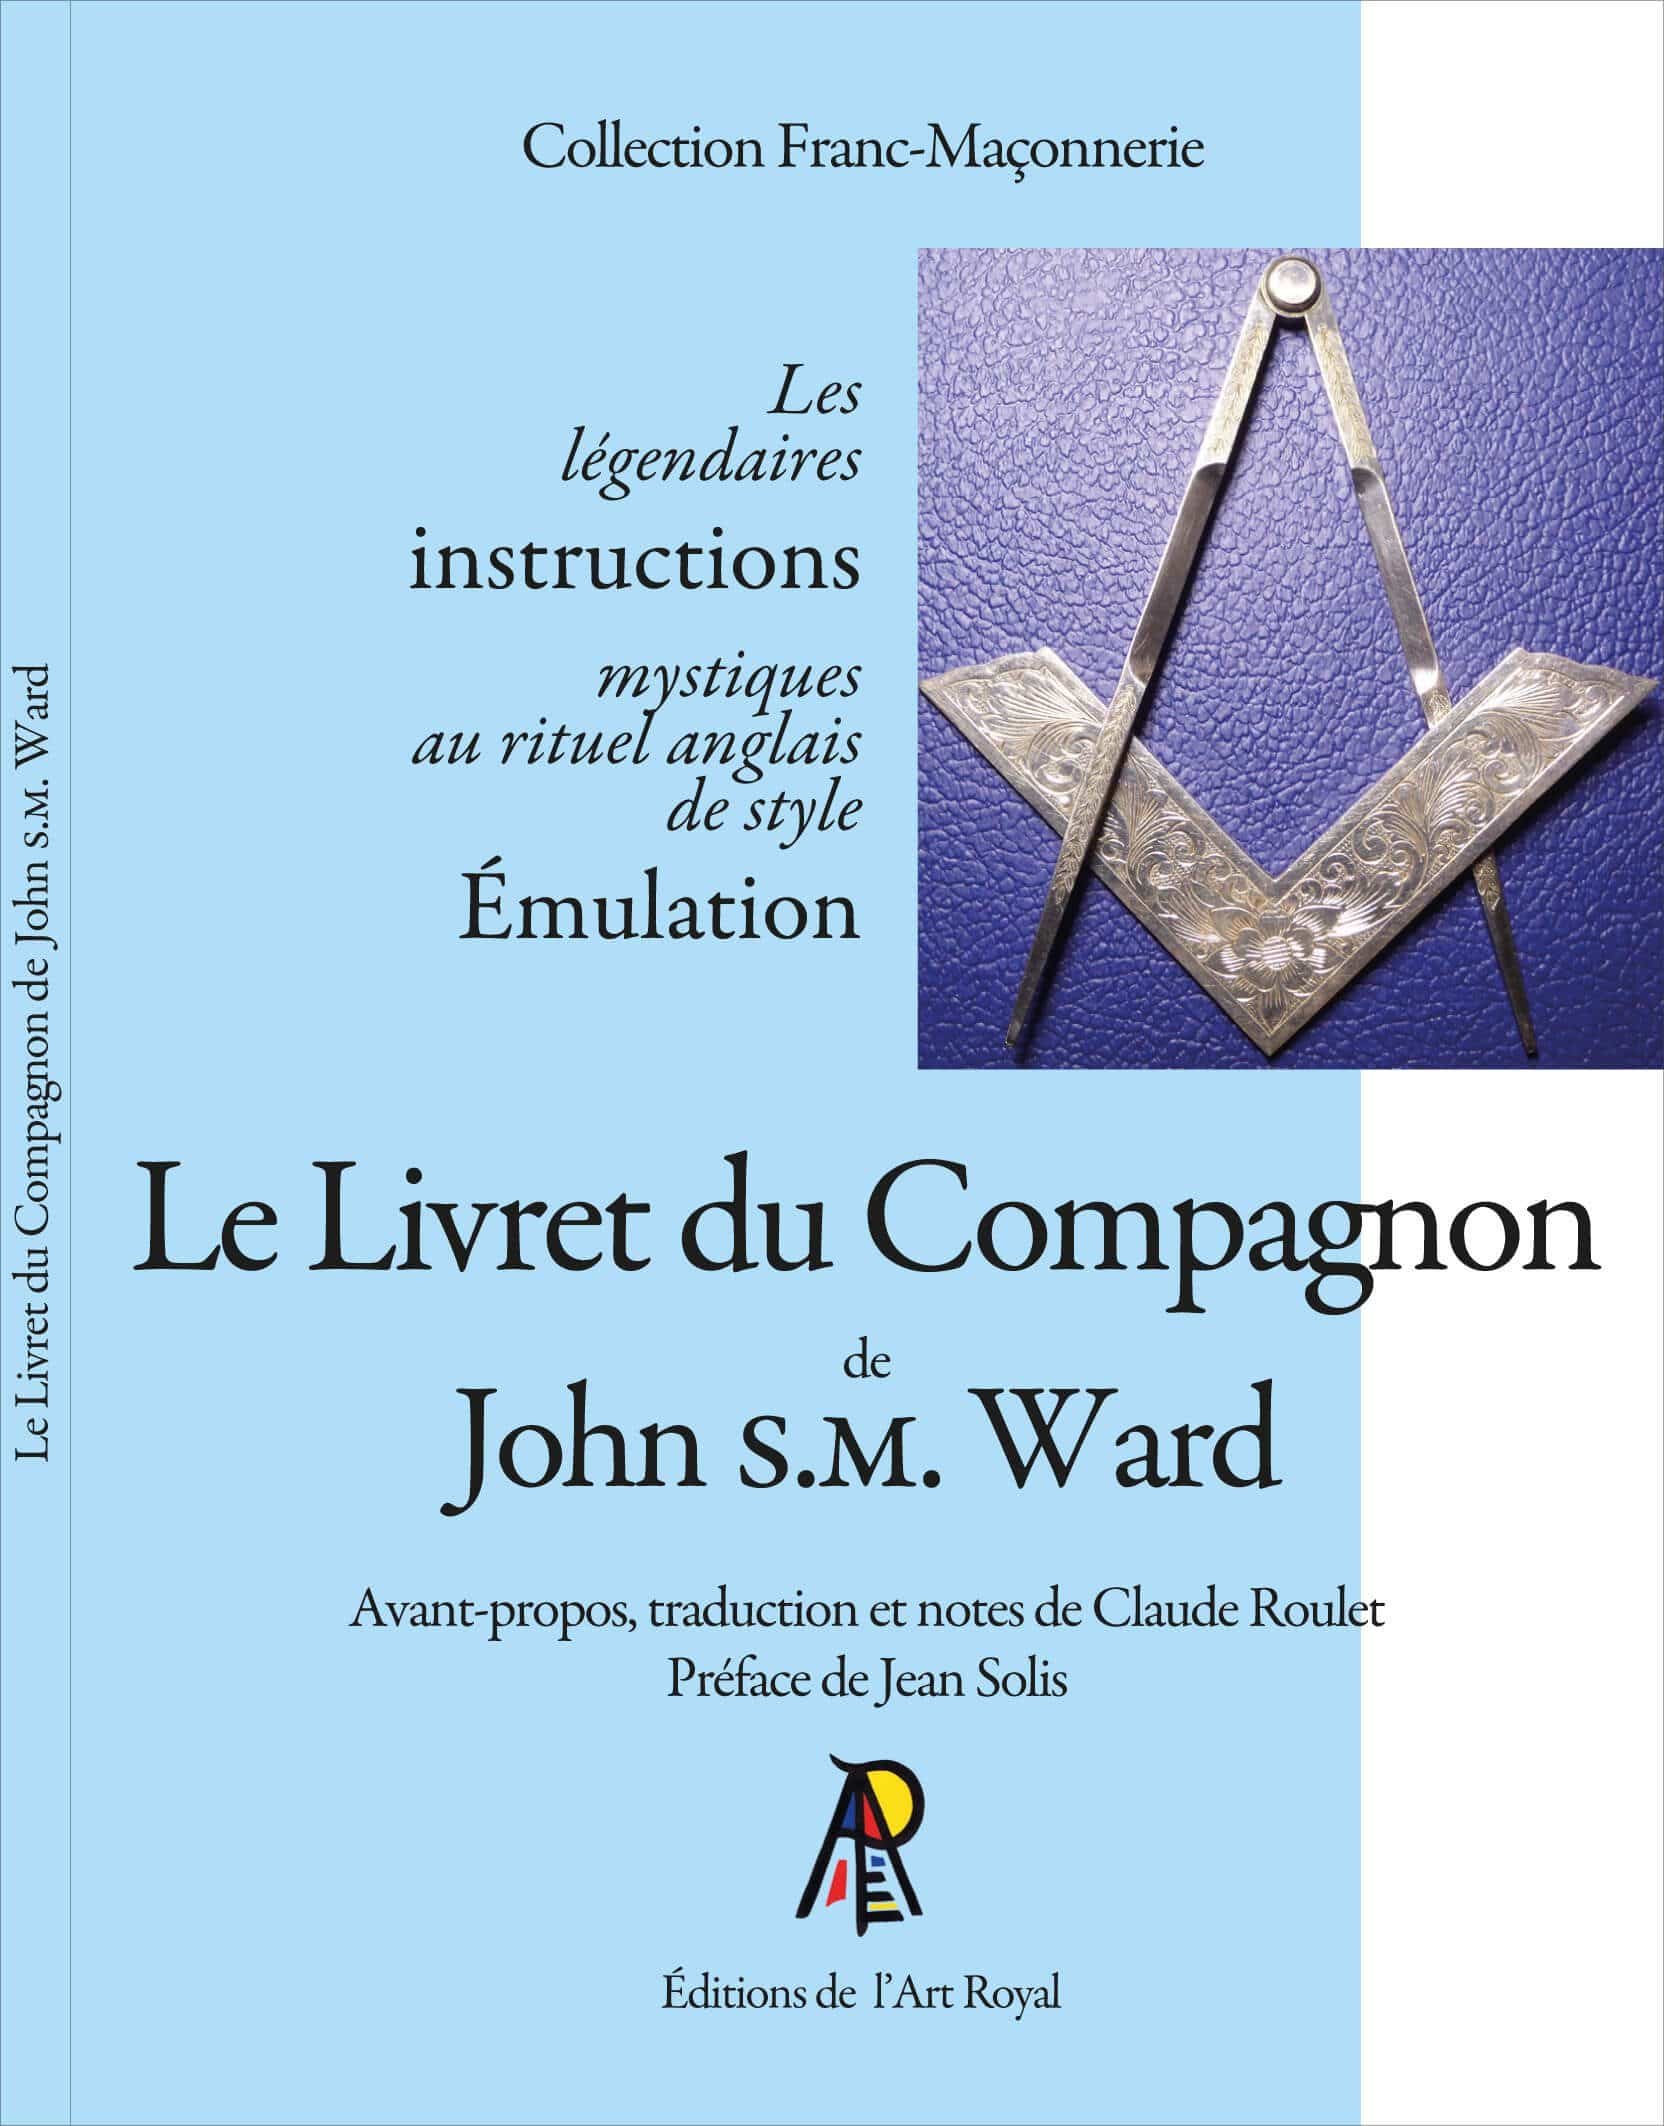 Le Livret du Compagnon de John S.M. Ward